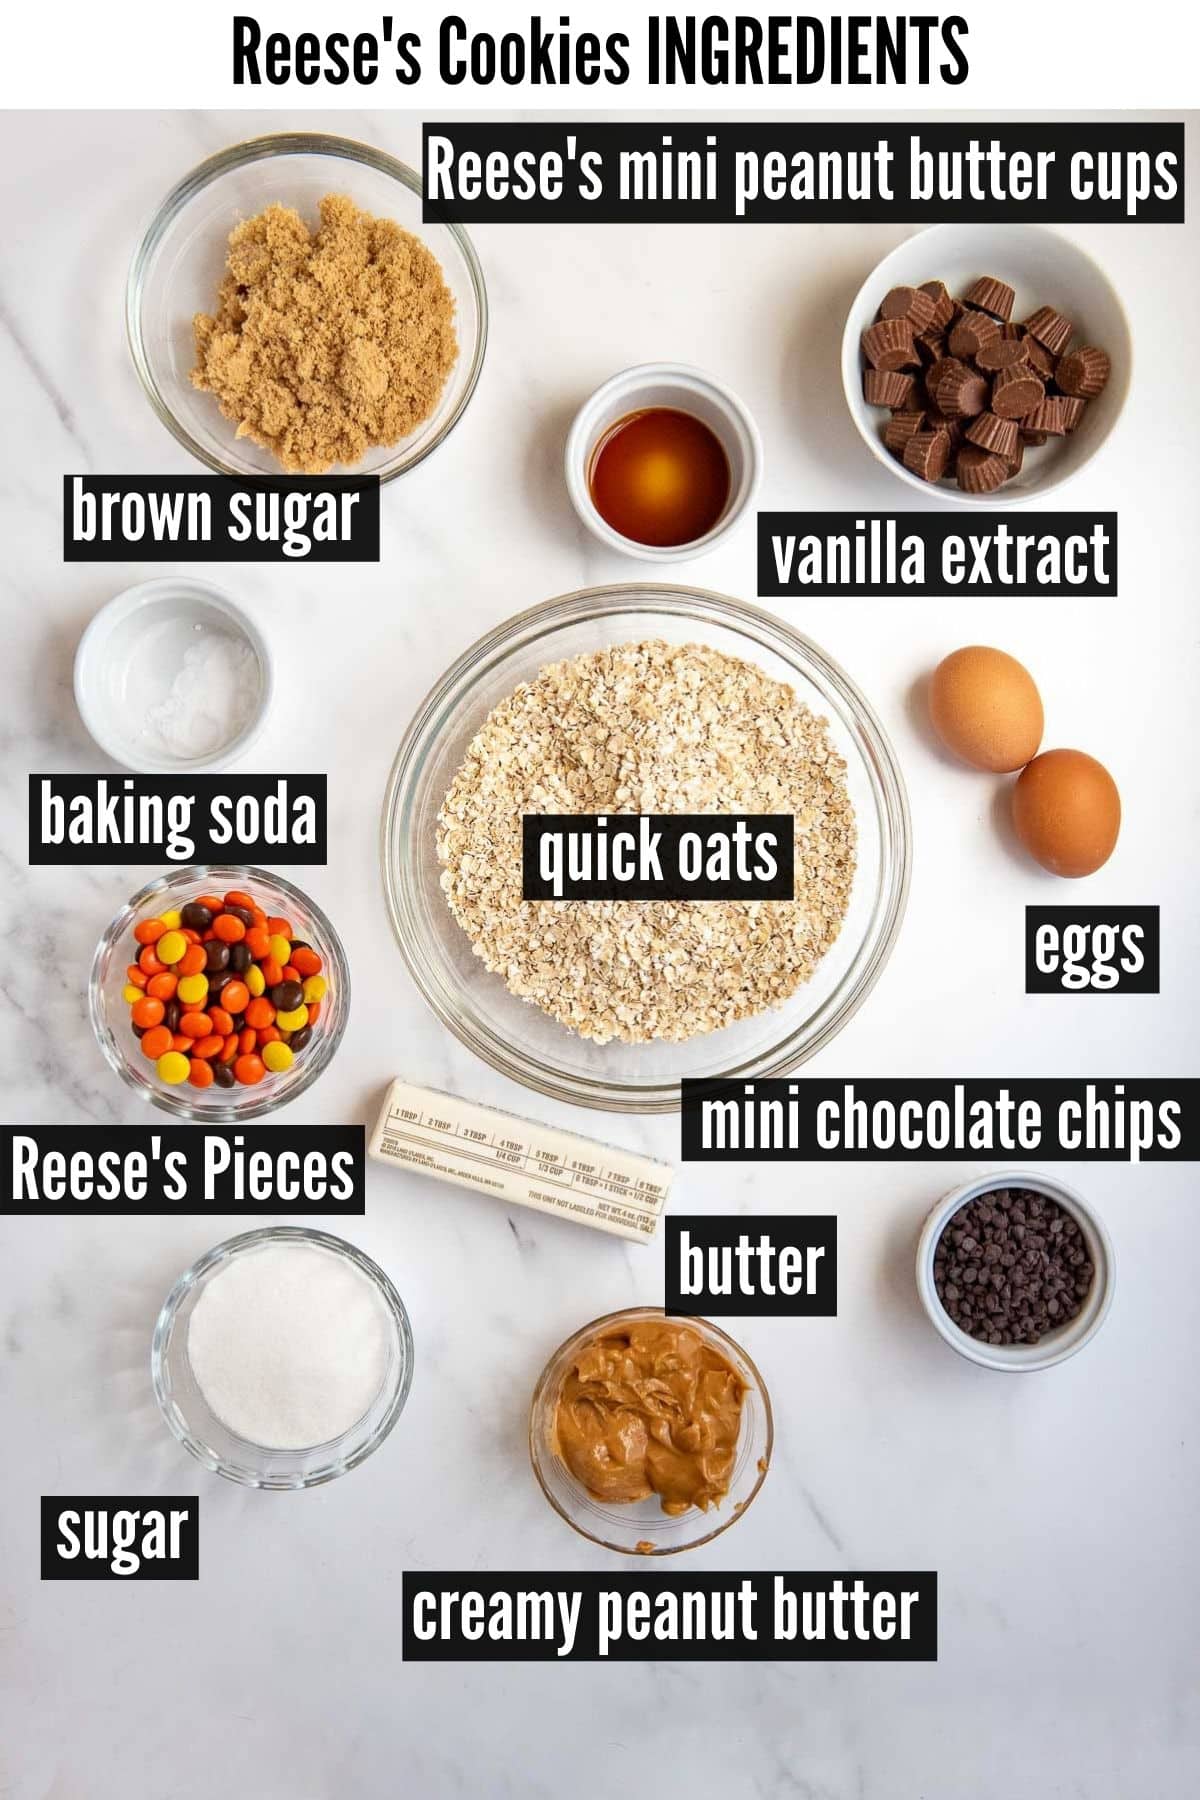 Reese's Cookies labelled ingredients